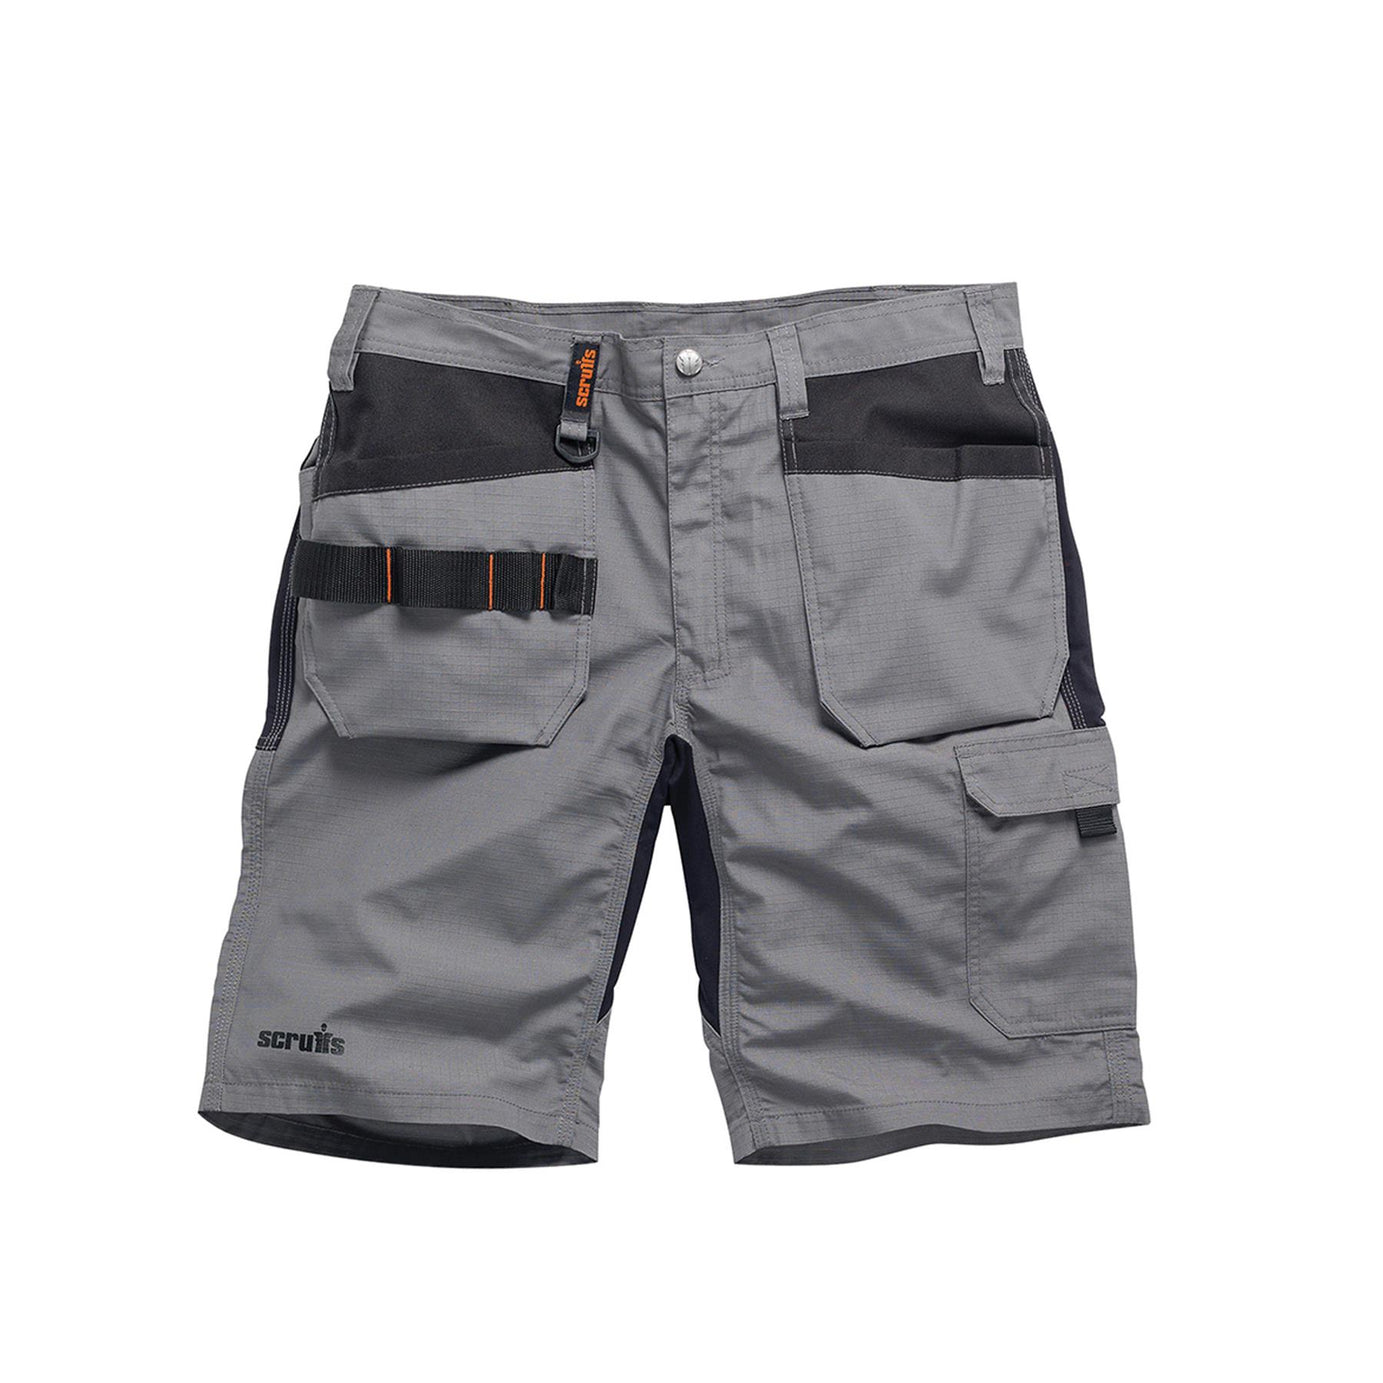 Scruffs Flex Holster Shorts Cargo Combat Pockets Hard Wearing Graphite 32 Waist